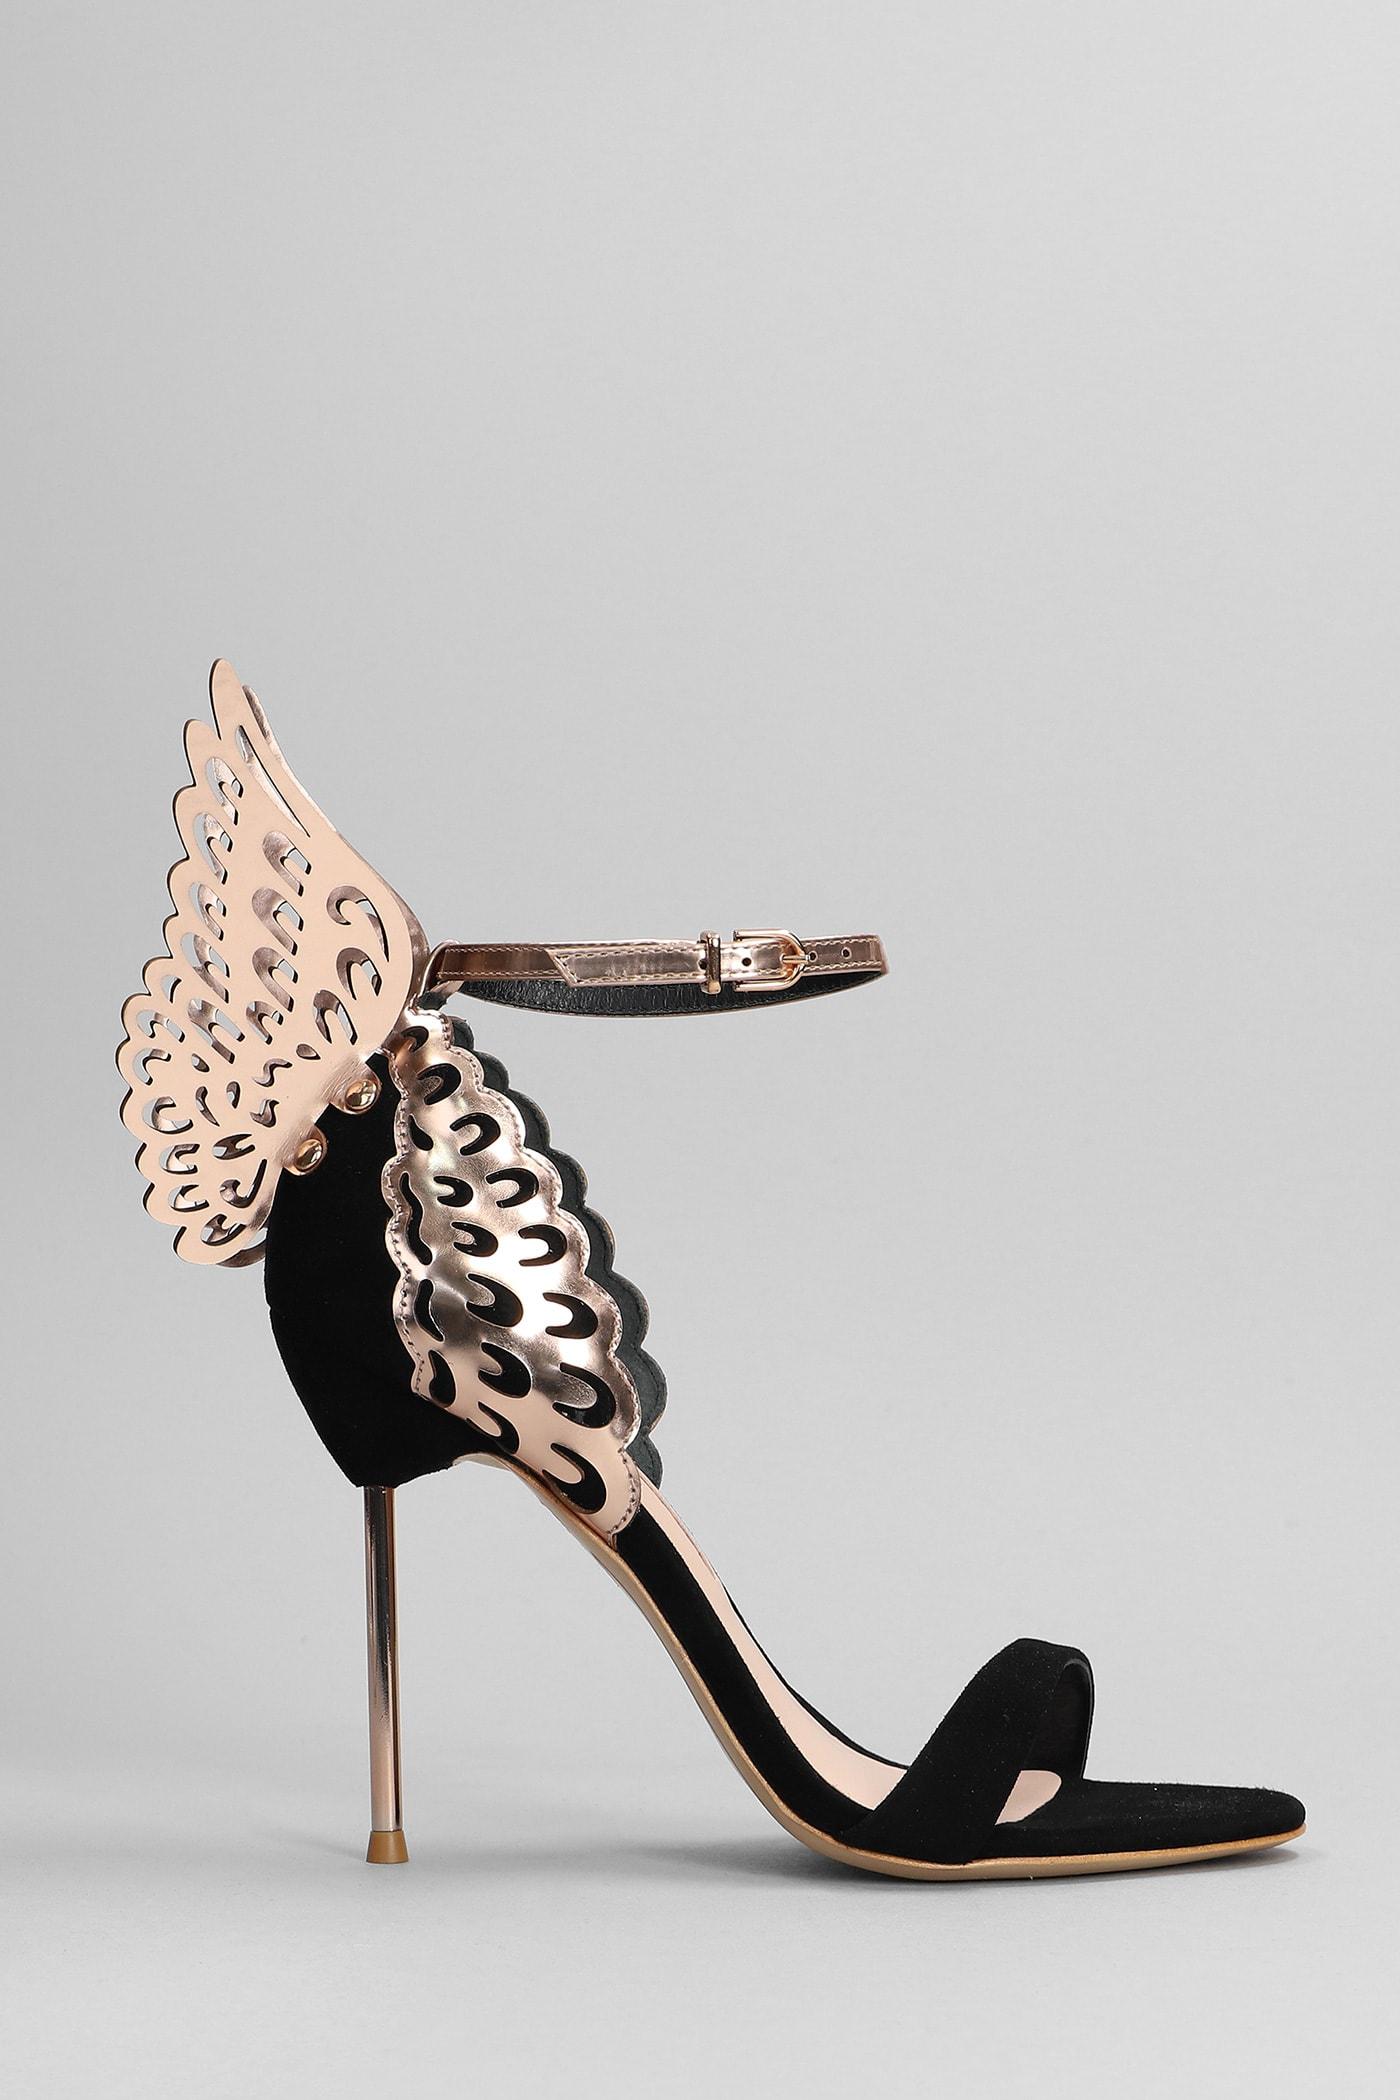 Sophia Webster Evangeline Sandals In Black Leather in Metallic | Lyst